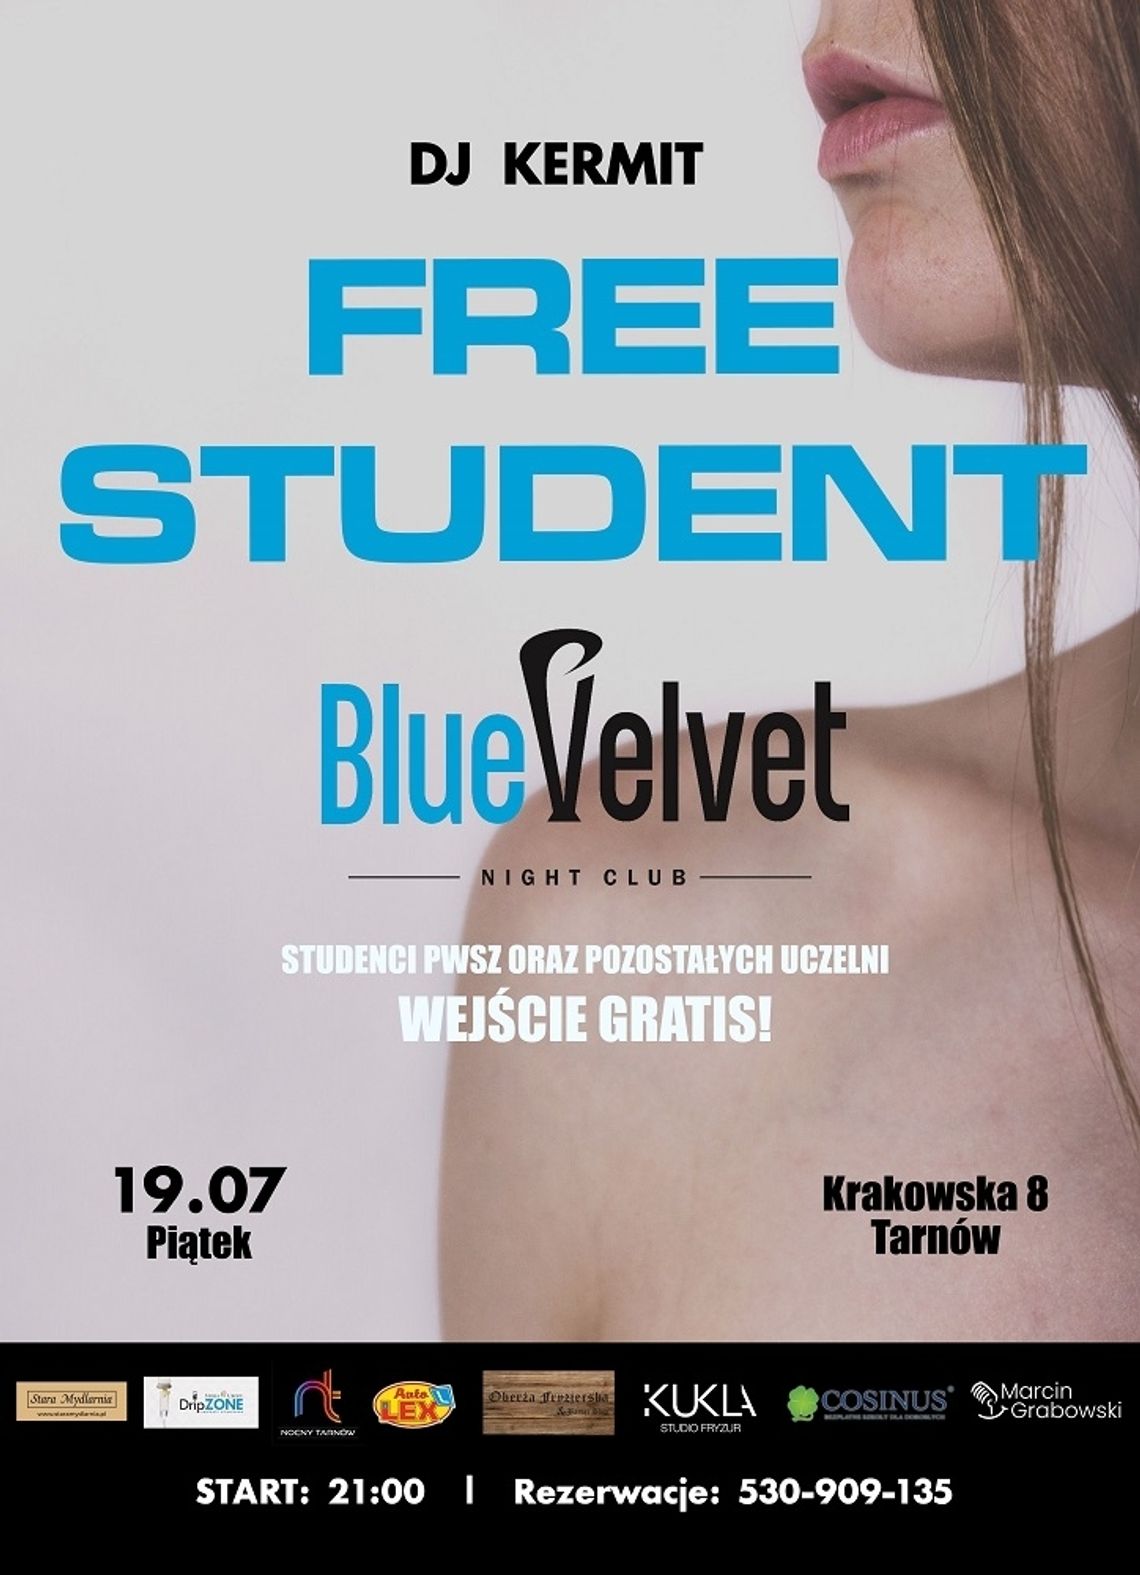 Free Student w Blue Velvet!